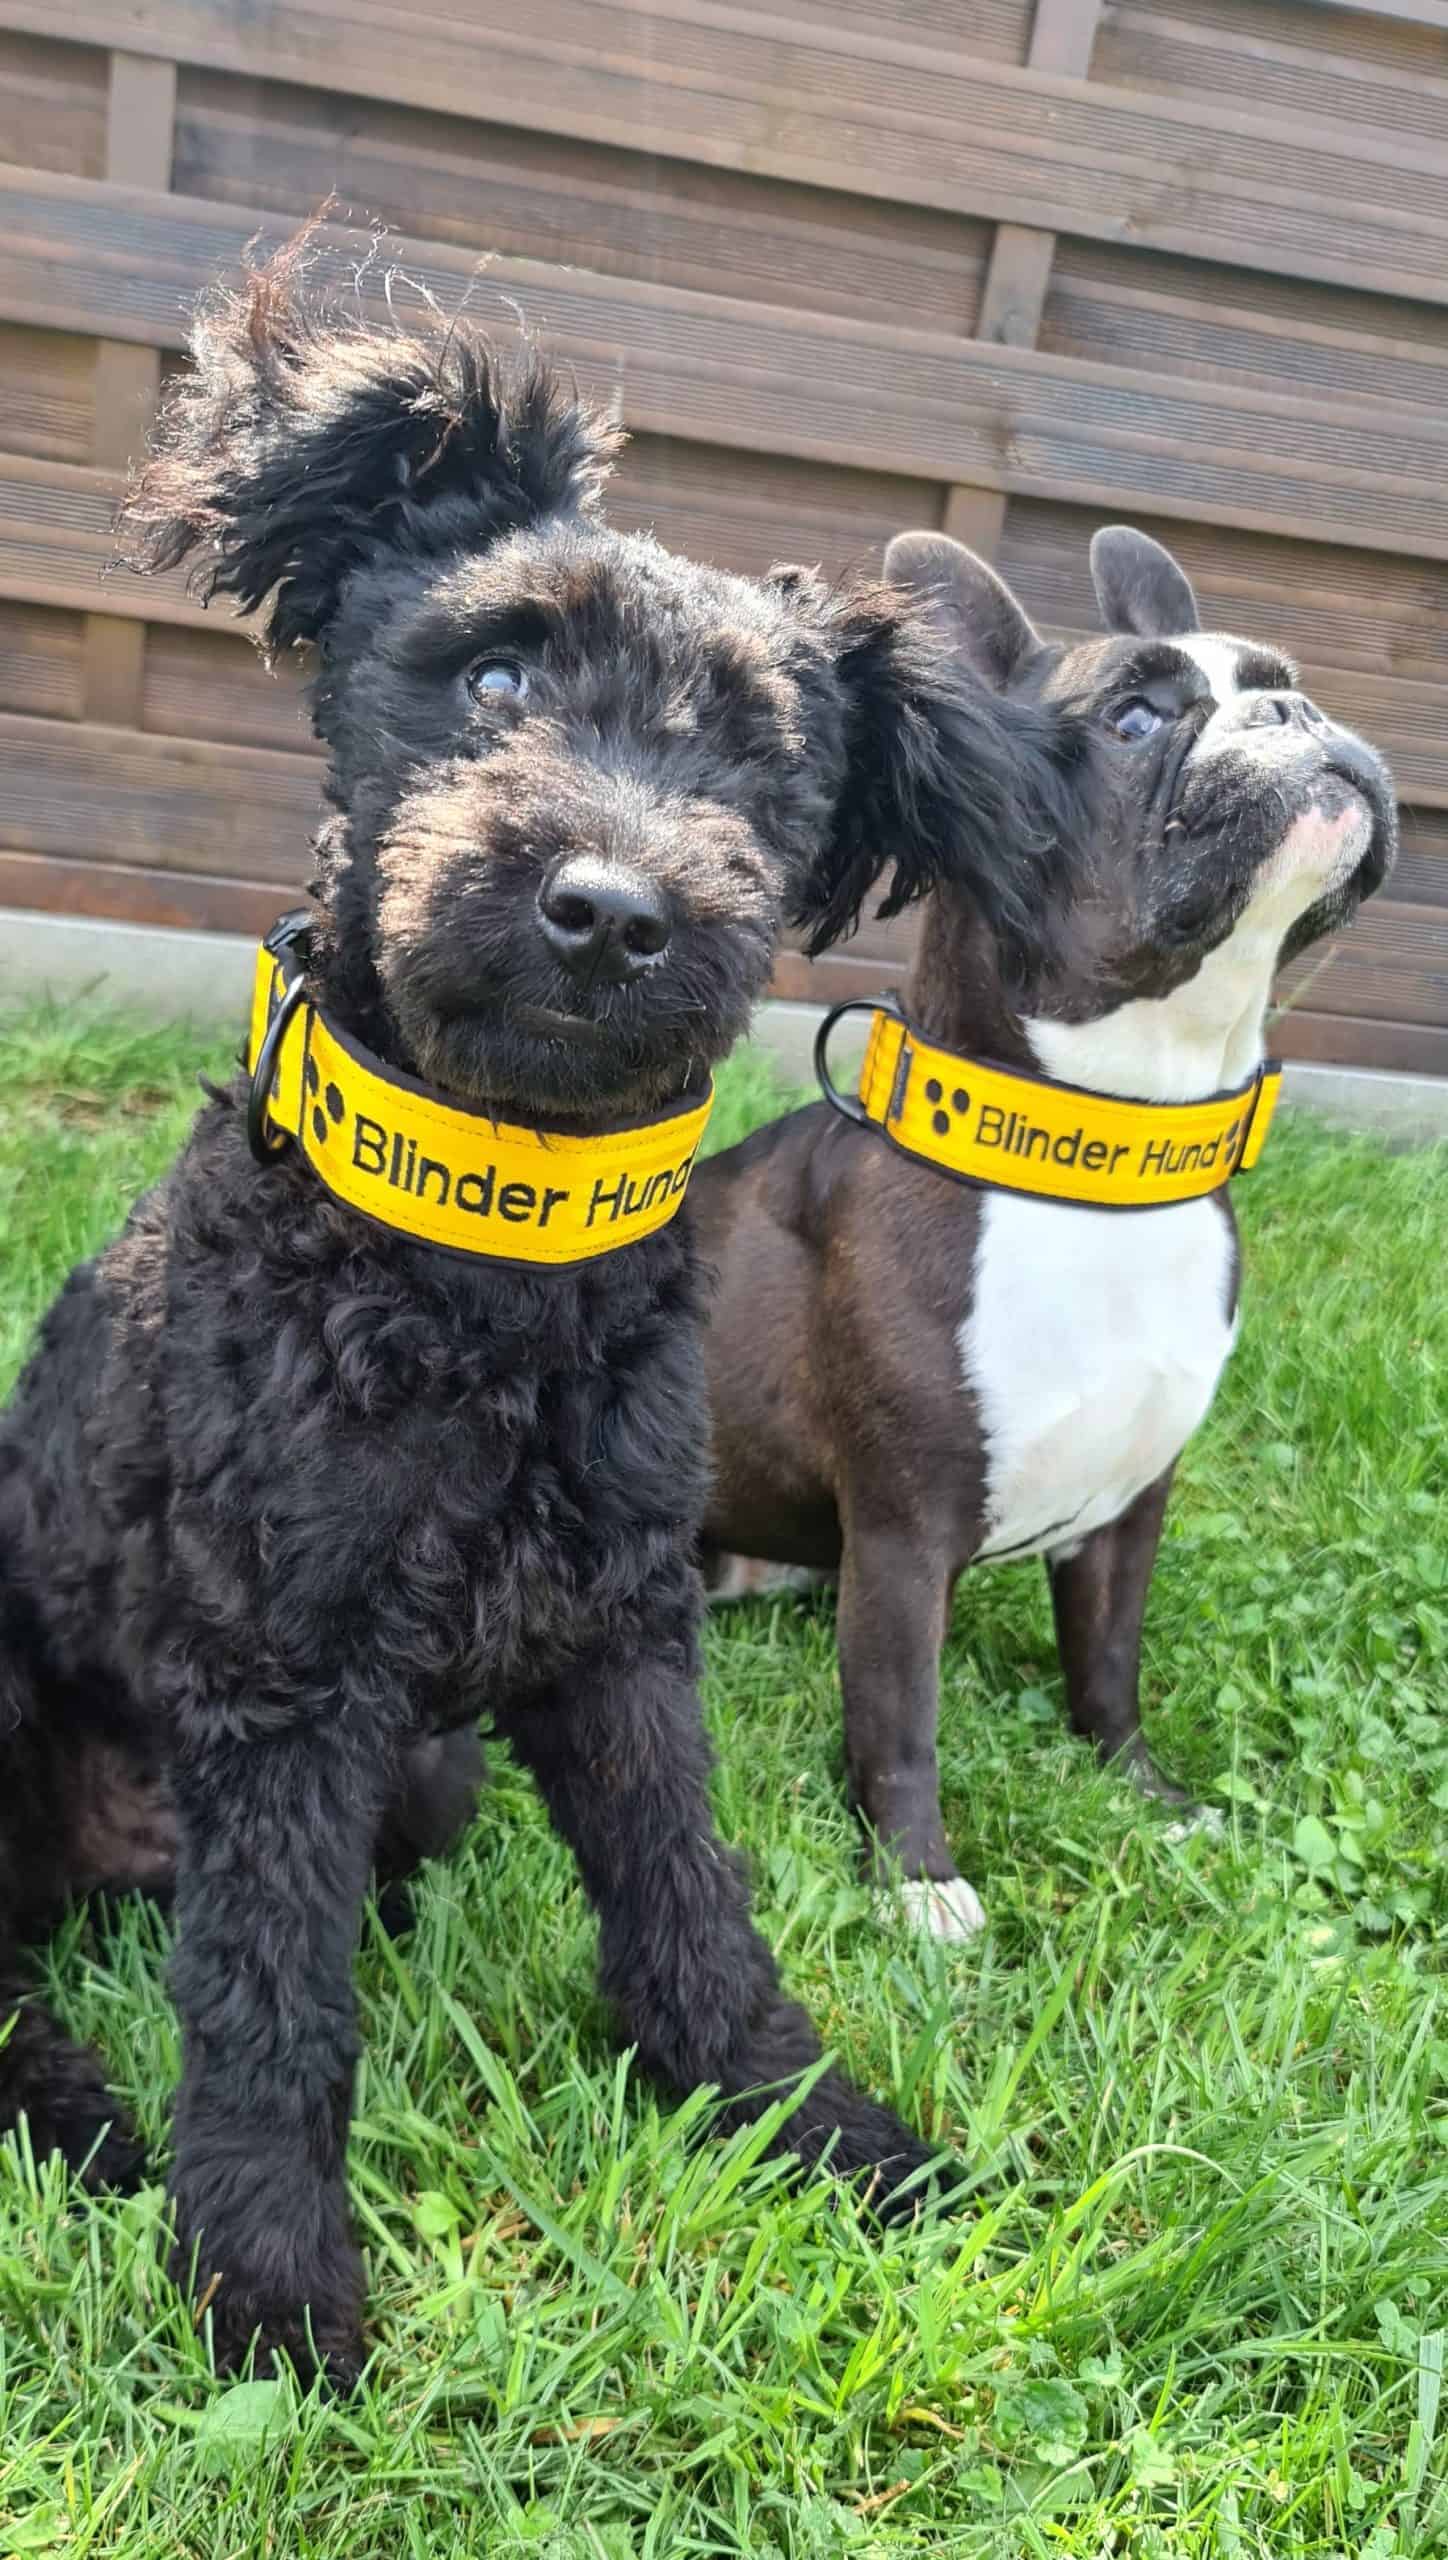 Fritz und Cleo von den Handicapdogs. Schwarzer Pumi und französische Bulldogge, beide mit einem Halsband "Blinder Hund" schwarz auf gelb. (c) Sabine Marzi